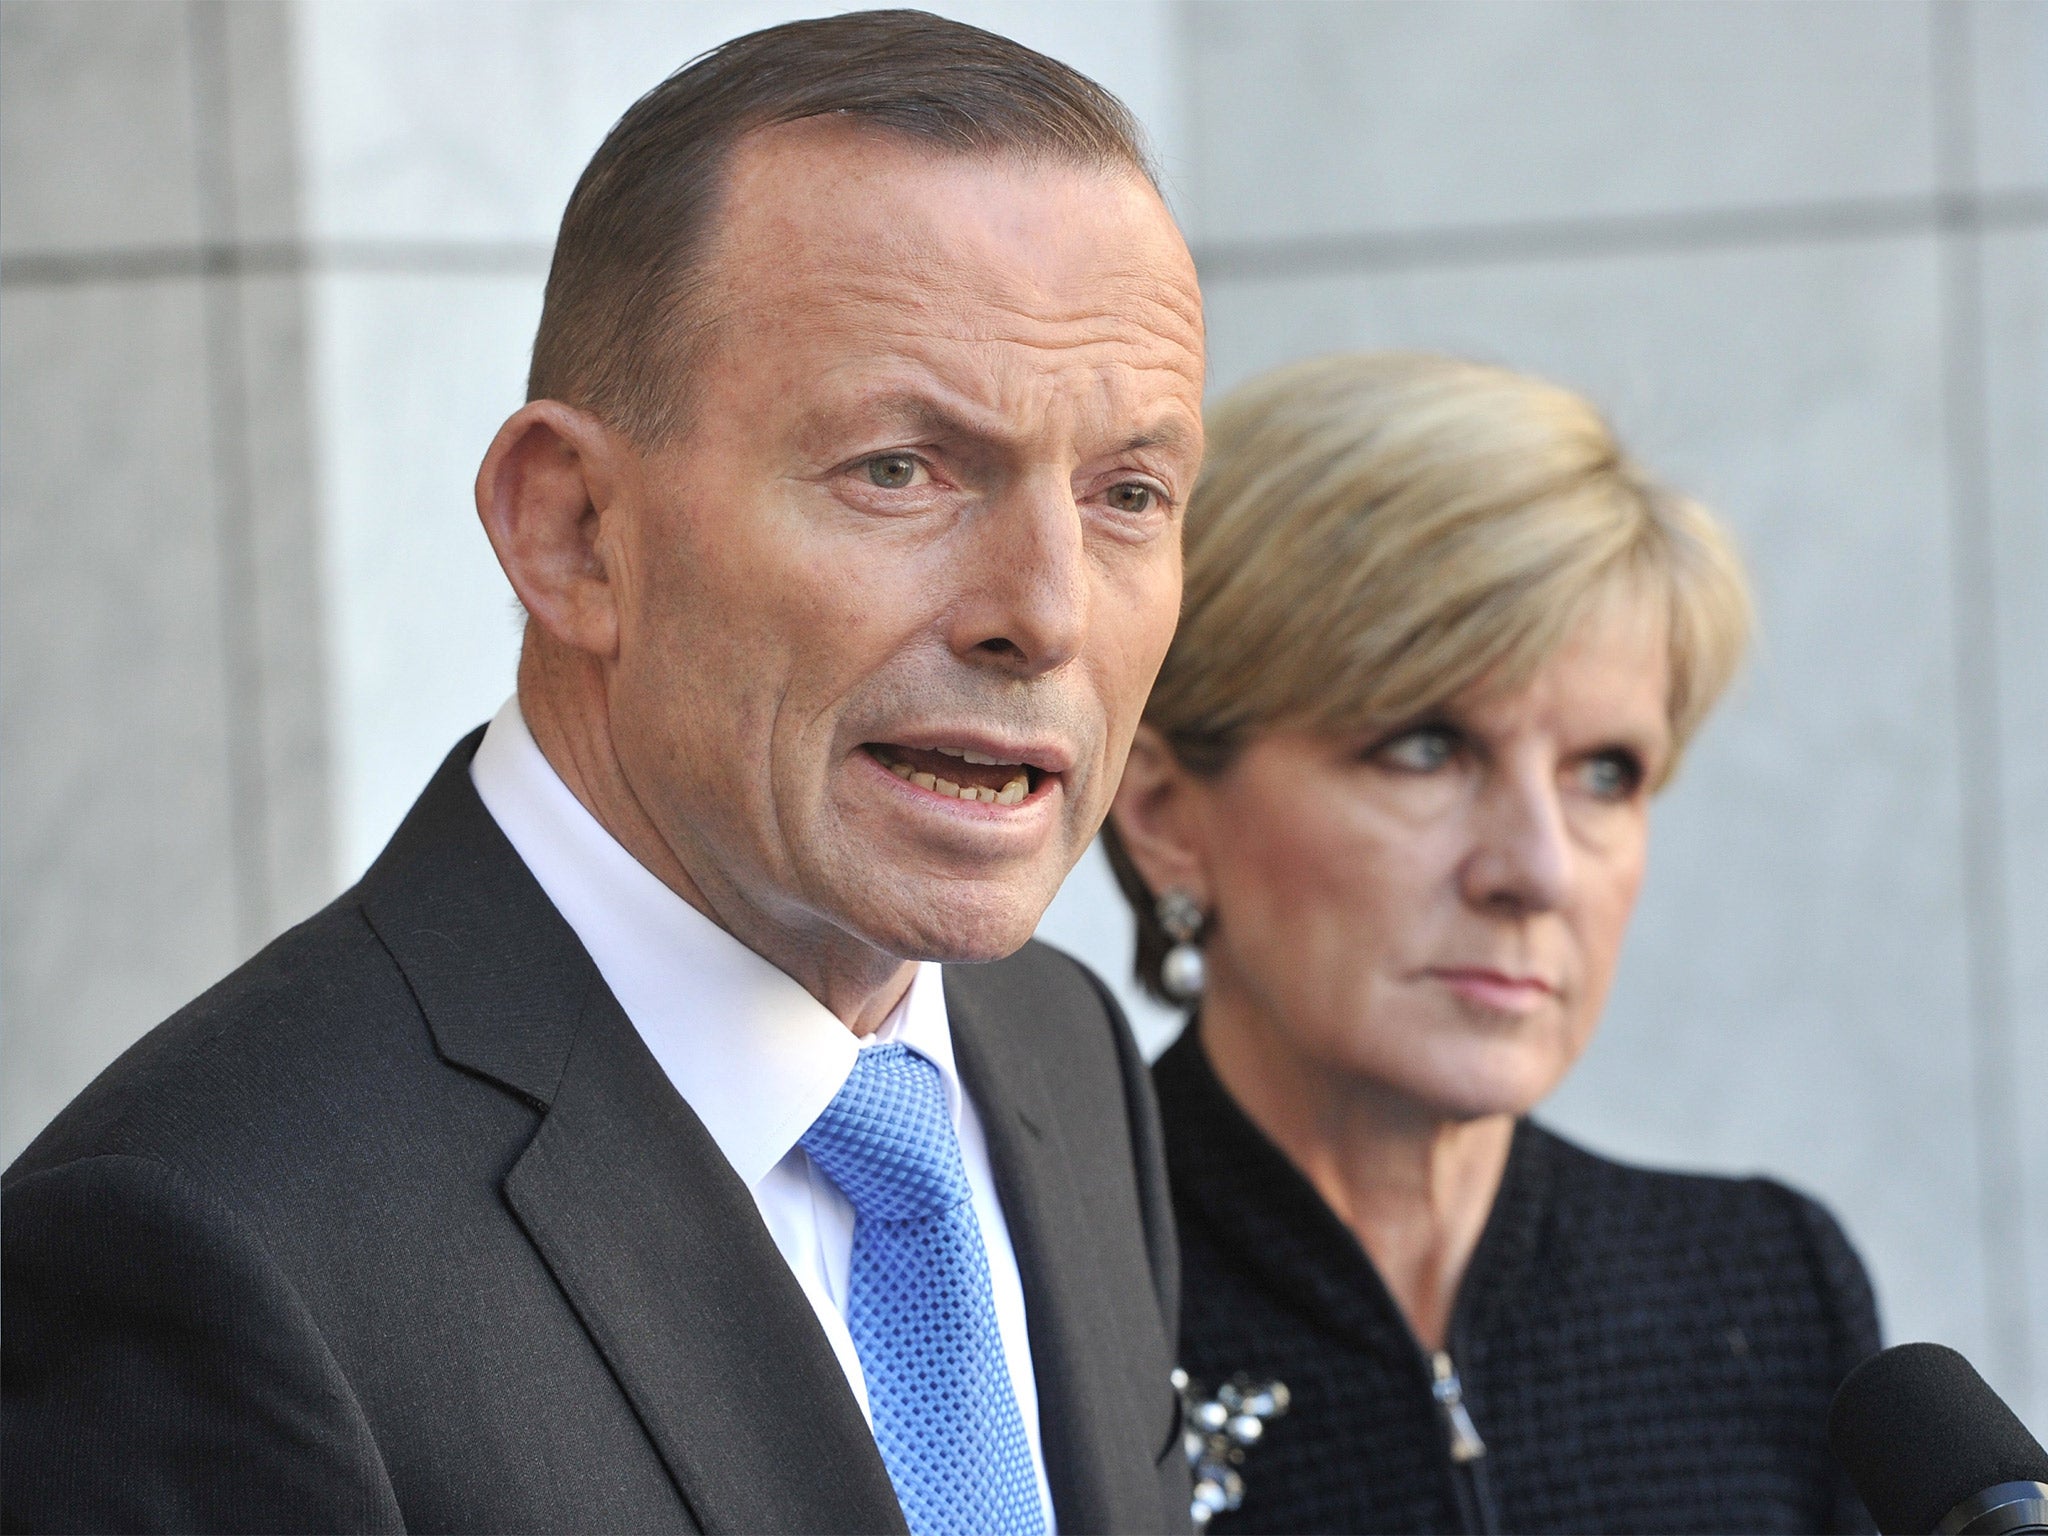 Australian Prime Minister Tony Abbott speaks to the media outside Parliament House in Canberra